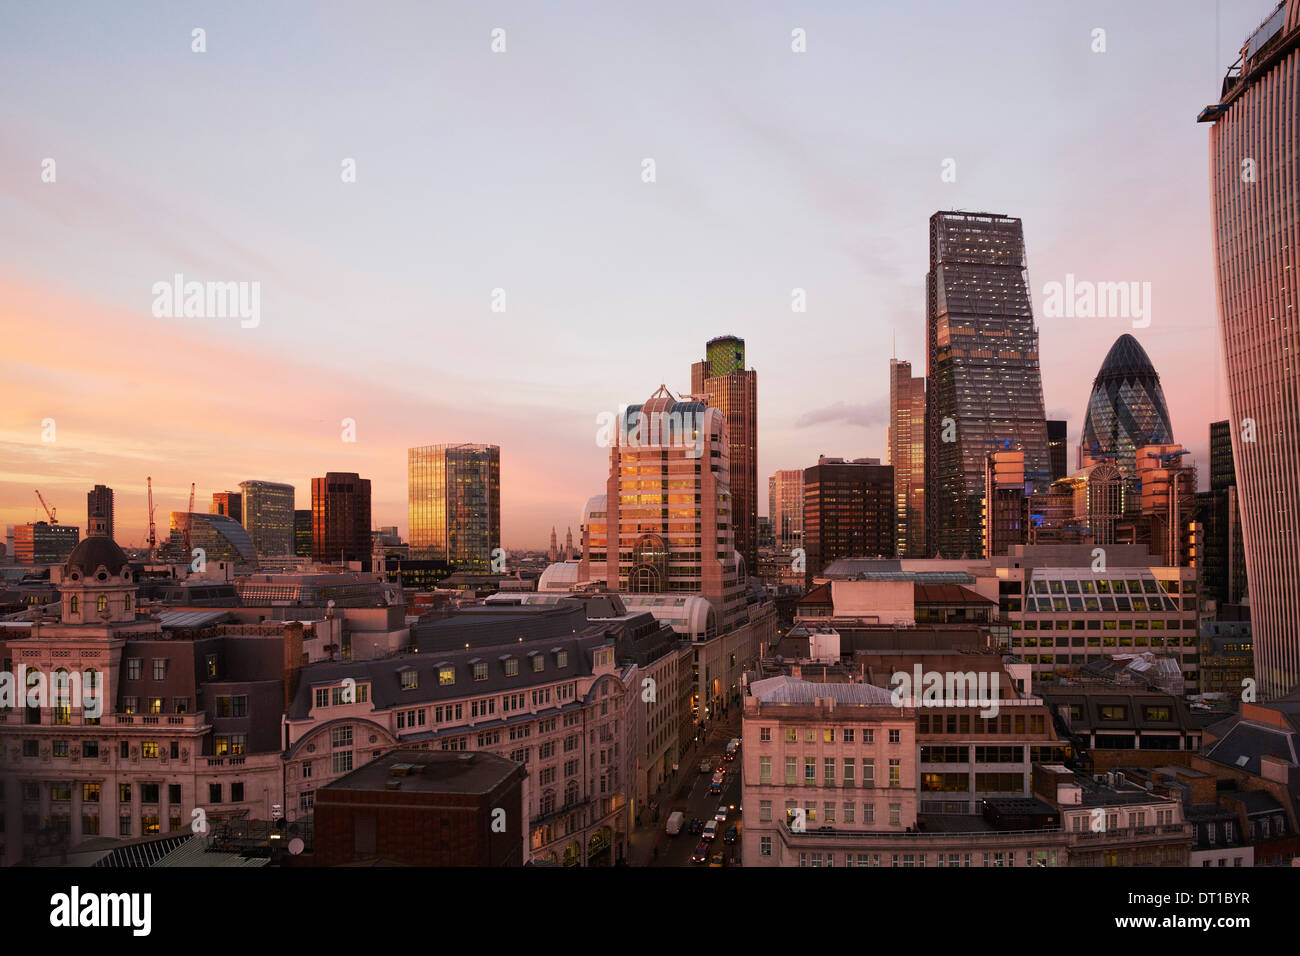 Stadtansichten London, City of London 2013, London, Vereinigtes Königreich. Architekt: verschiedene, 2013. London Sehenswürdigkeiten Stadtpanorama. Stockfoto